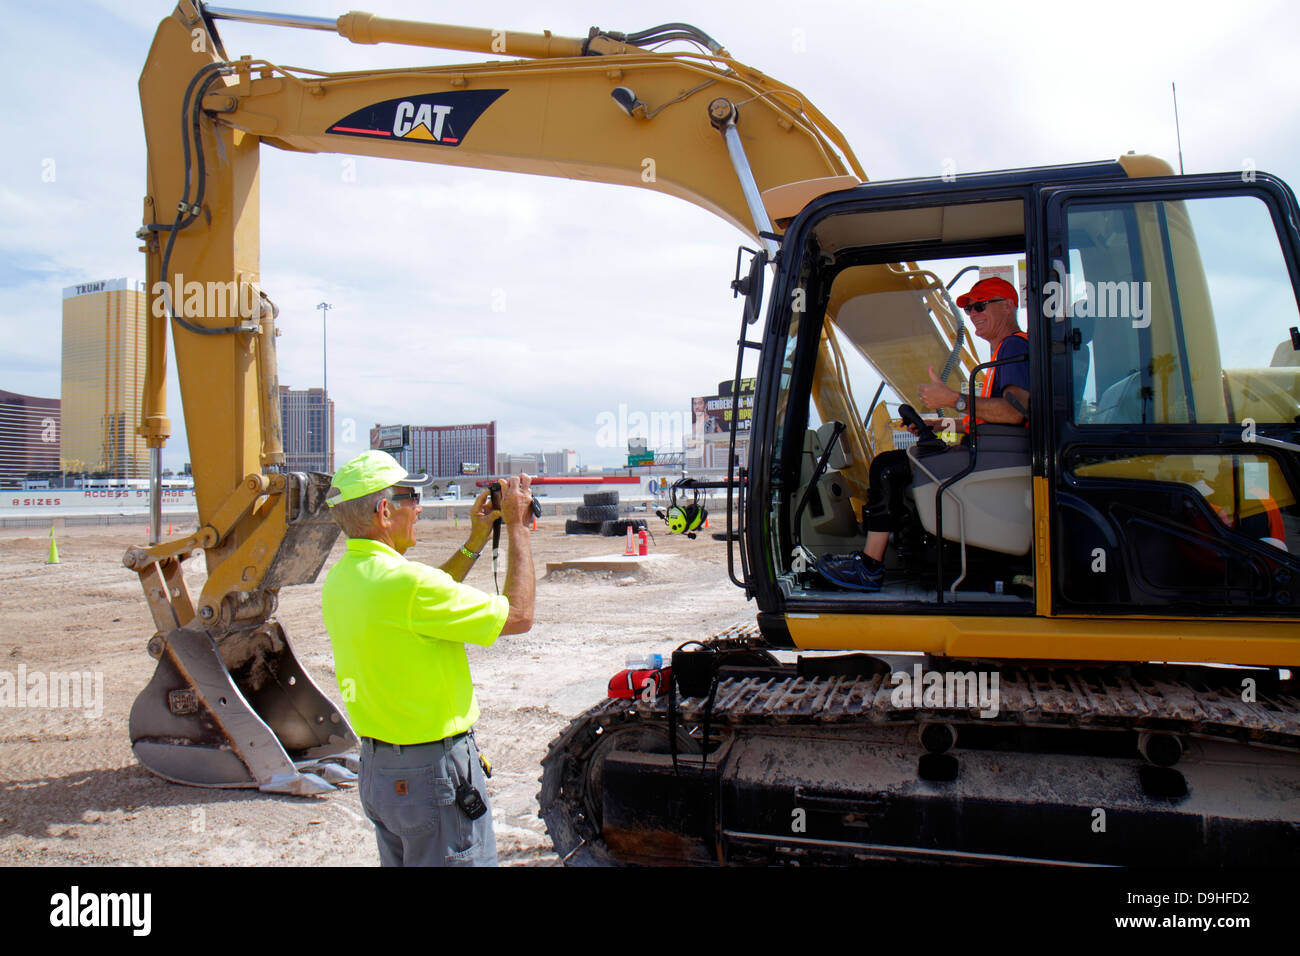 Las Vegas Nevada, Dig This, obra de construcción de bulldozer, profesor de excavadoras hidráulicas Caterpillar 315C que enseña a hacer fotos Foto de stock